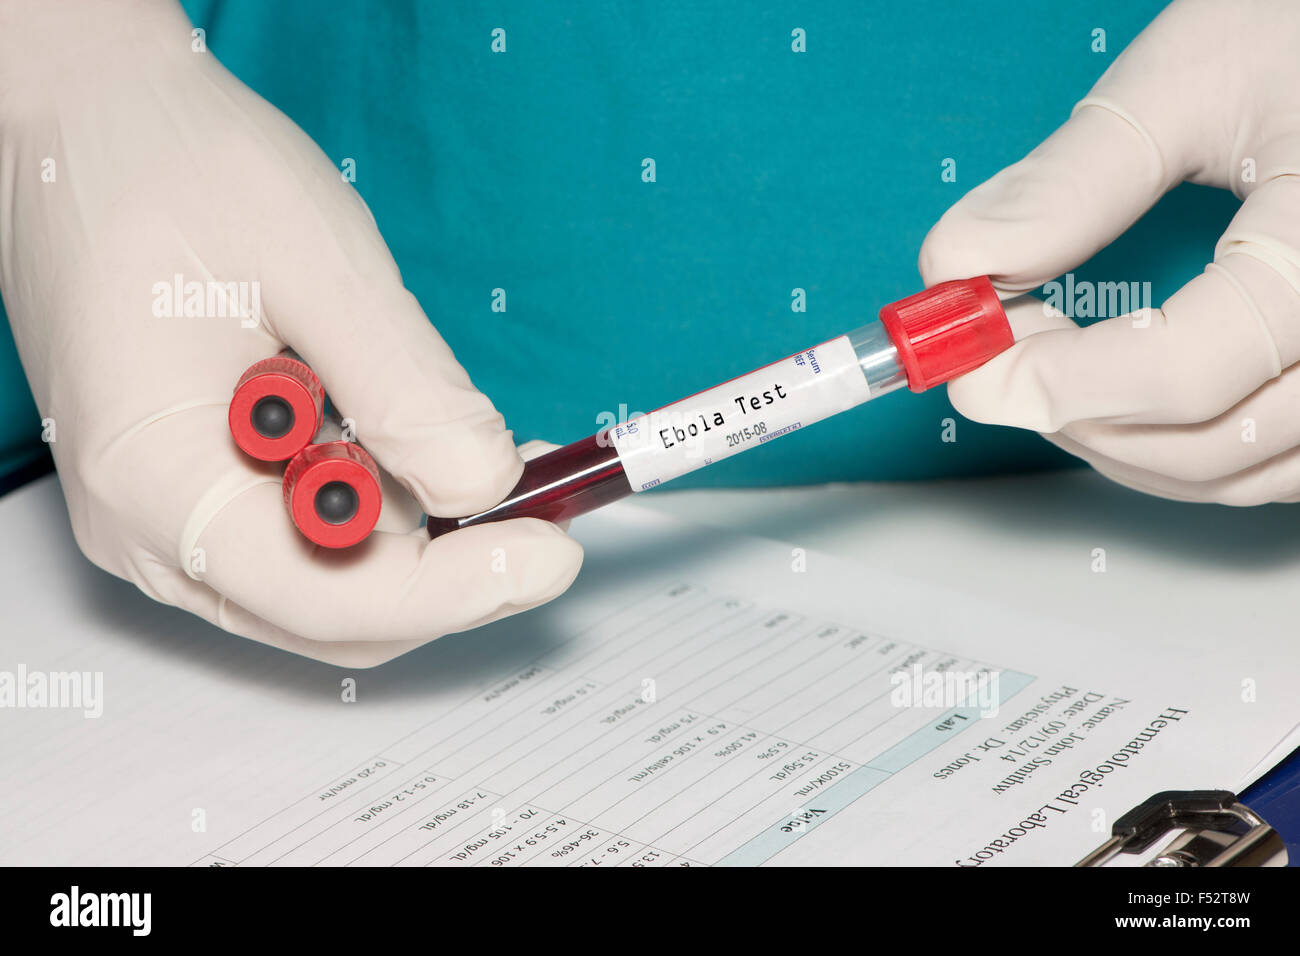 Le tube de prélèvement sanguin avec étiquette test Ebola détenues par technicien. Label créé par le photographe. Banque D'Images